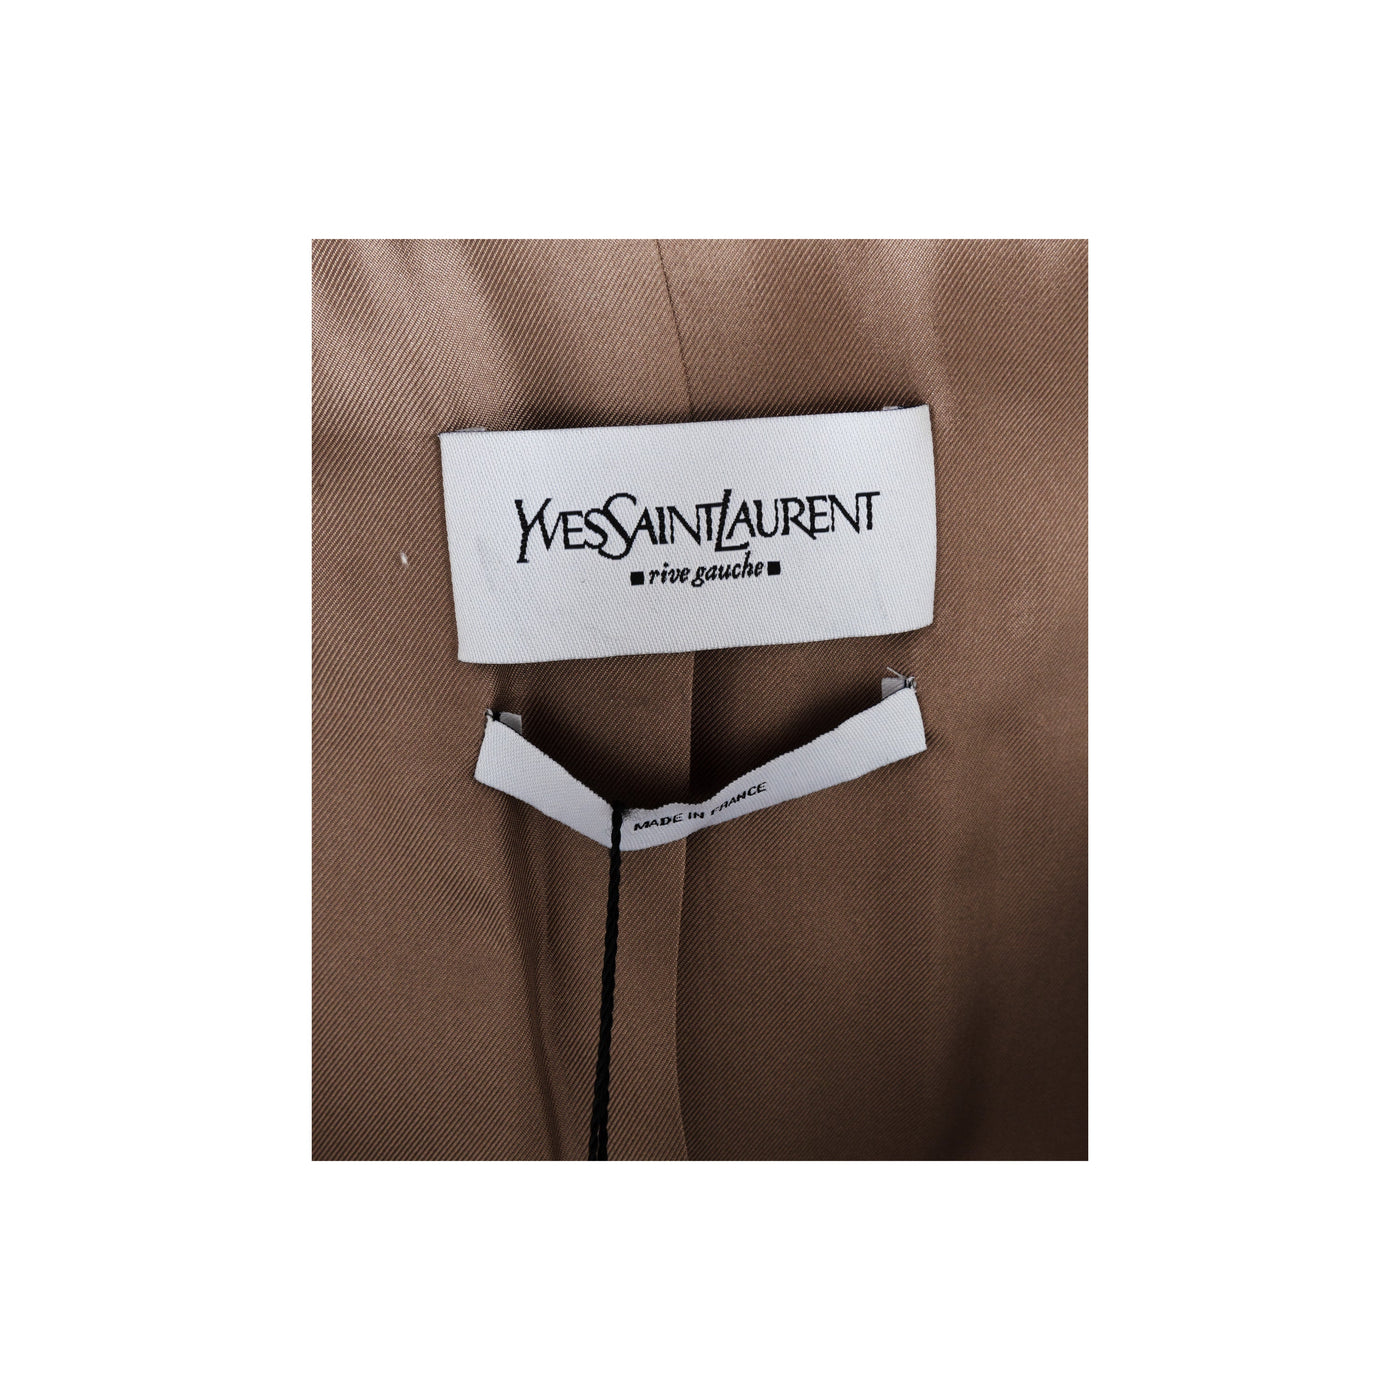 Secondhand Yves Saint Laurent Silk Suit 